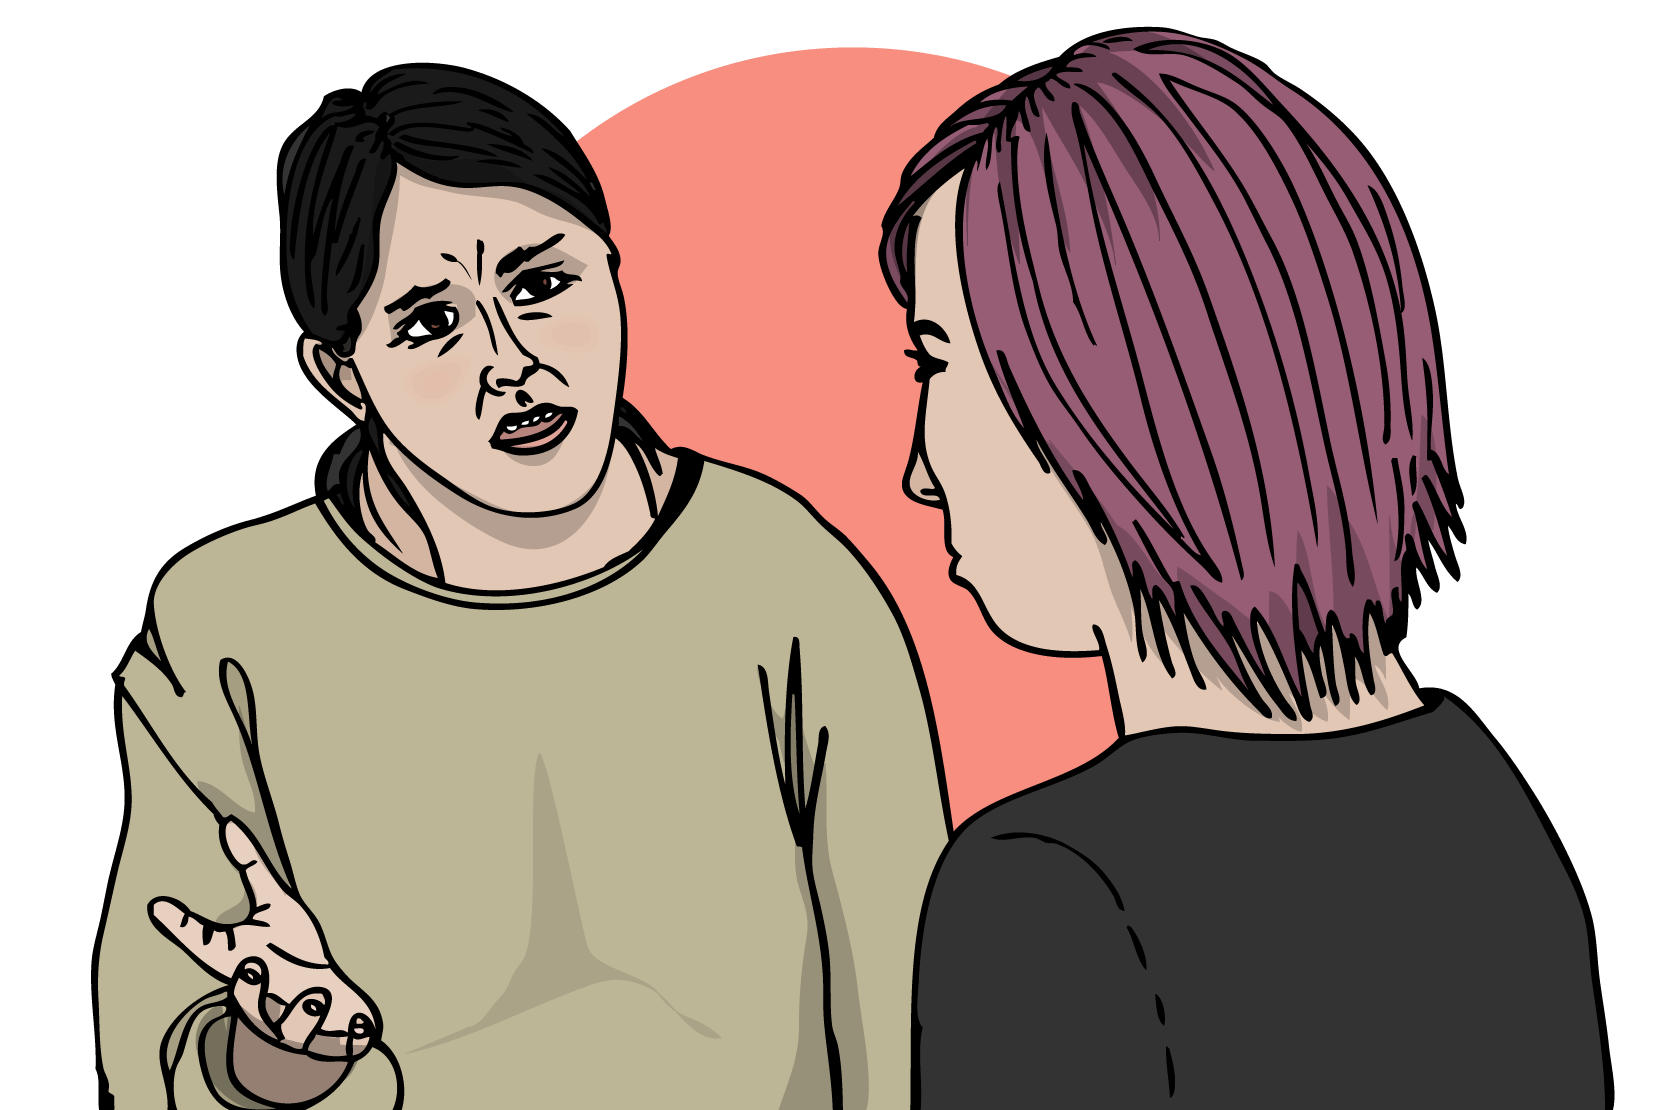 En vuxen som pratar upprört med en ung person. Den vuxna har röda kinder och rynkad panna. Den unga personer står tyst och ser sammanbiten ut. Illustration